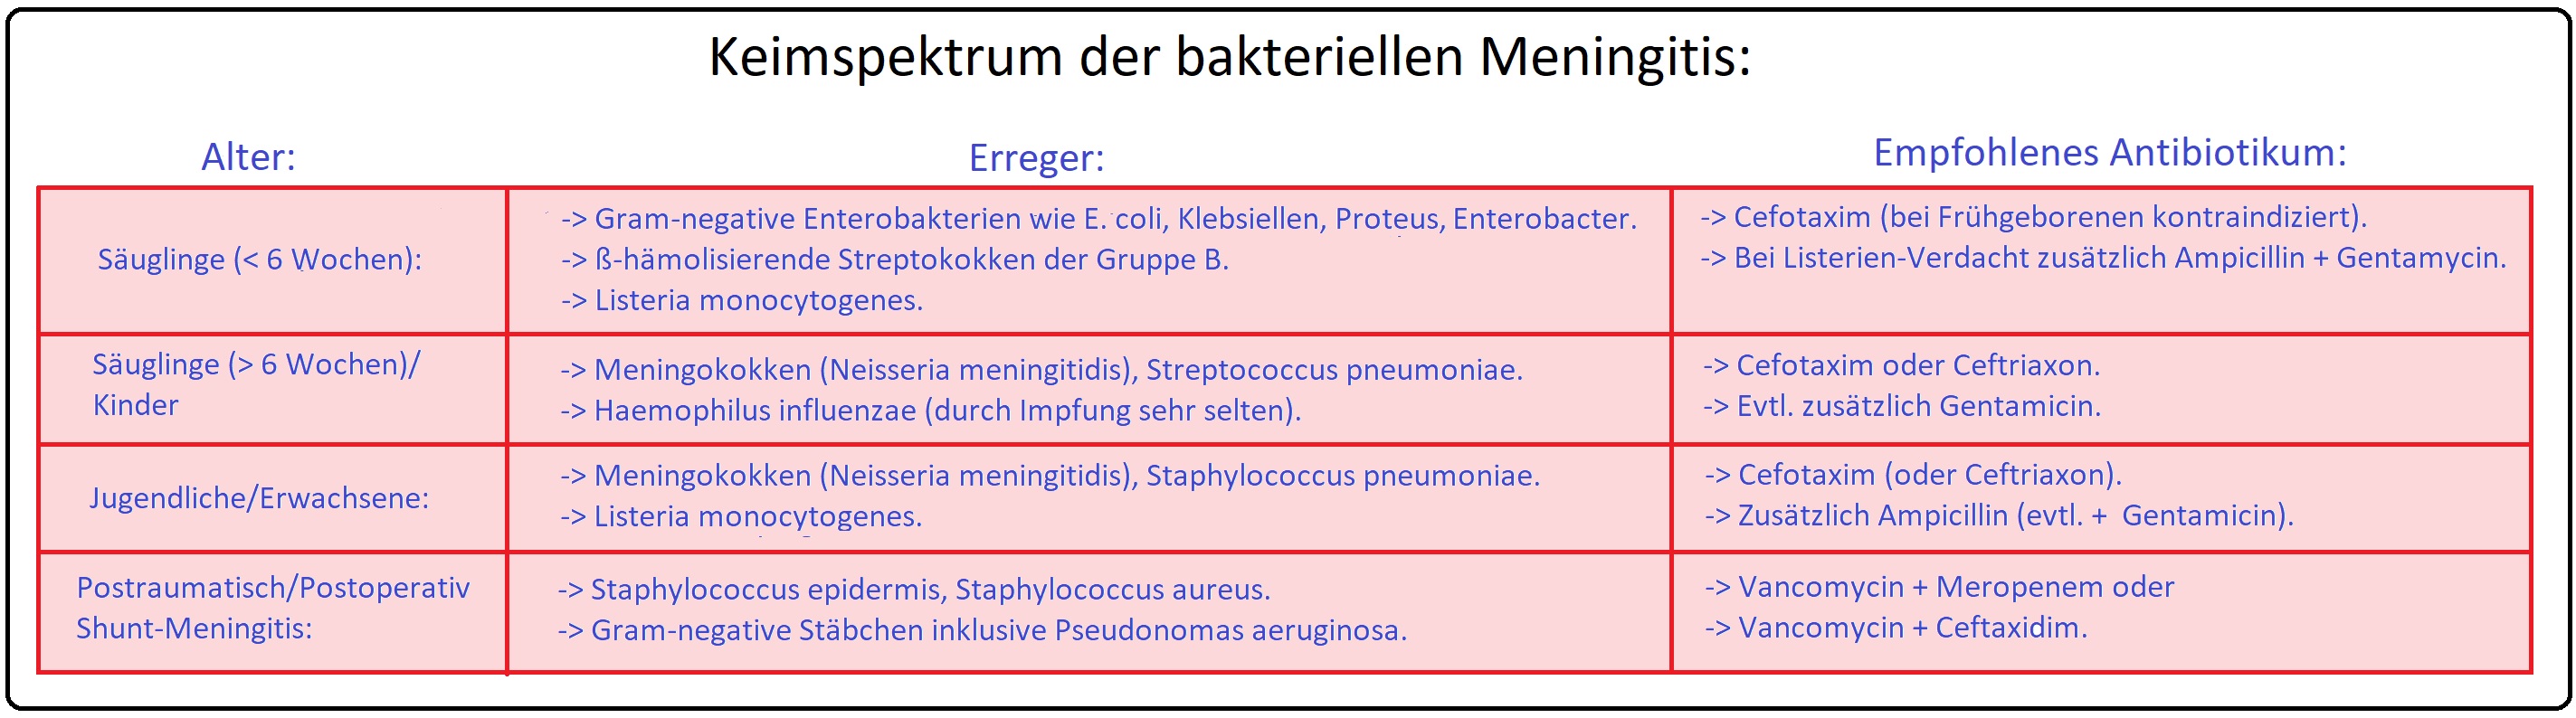 025 Keimspektrum der bakteriellen Meningitis